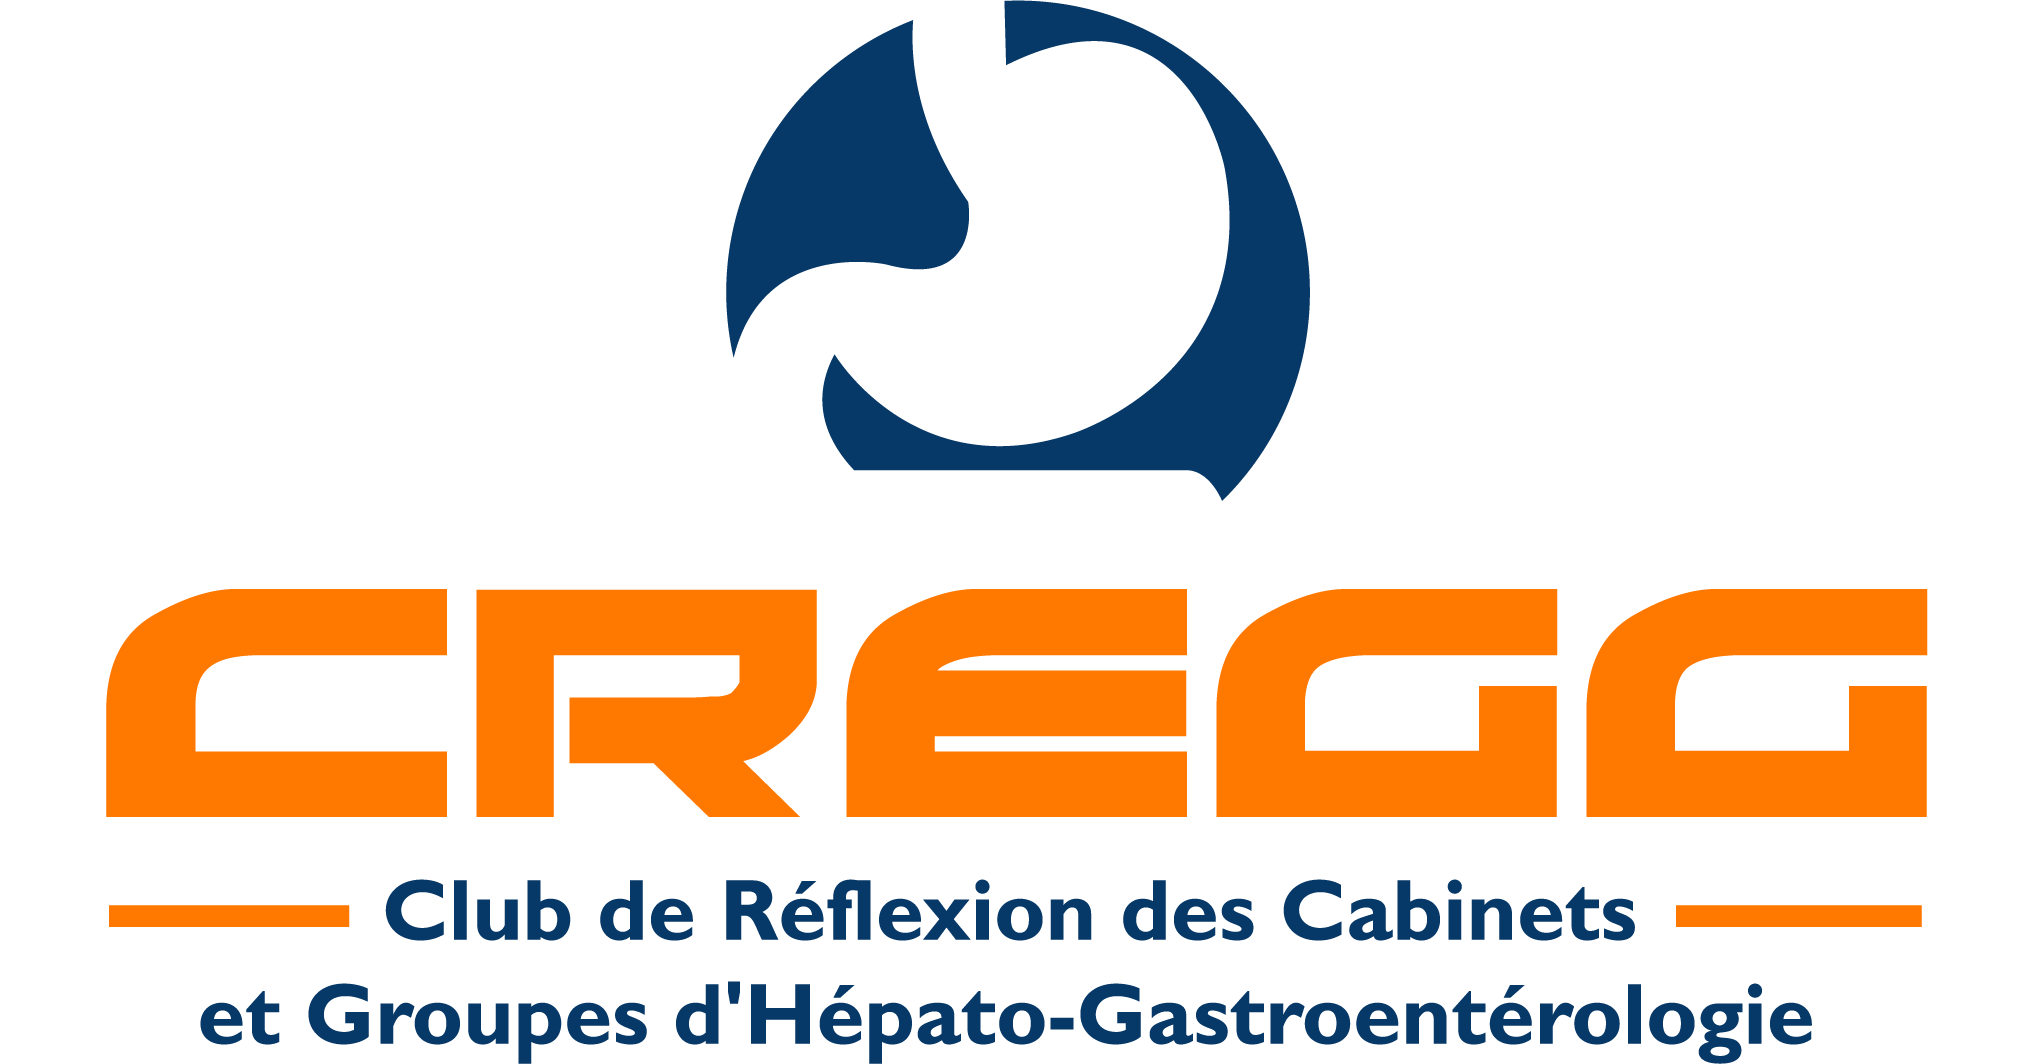 CREGG Hepatology Committee